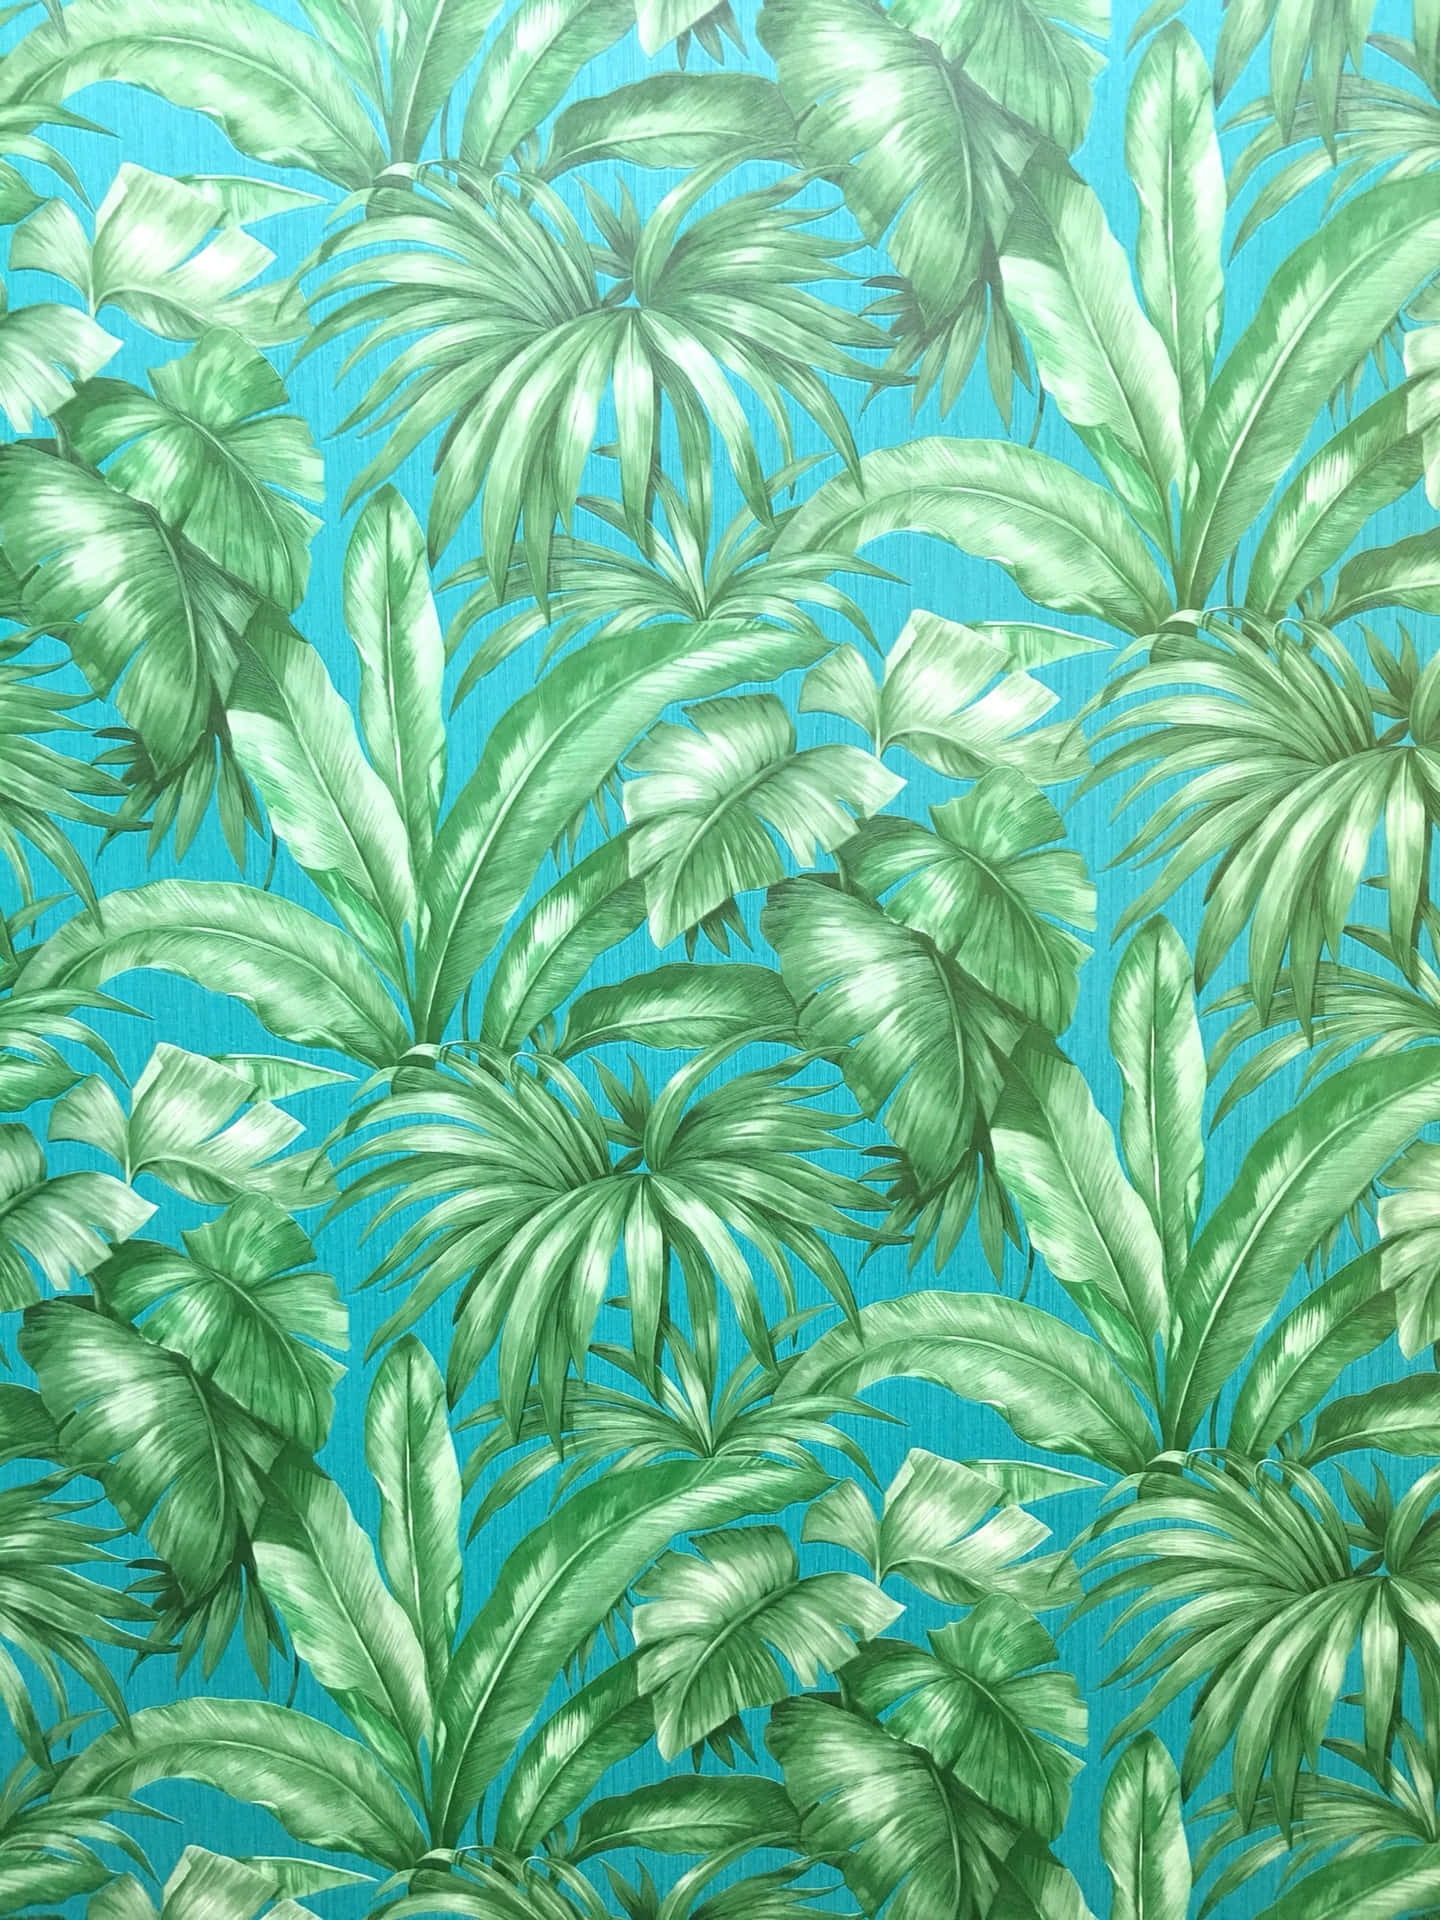 Einetropische Tapete Mit Grünen Blättern Darauf Wallpaper